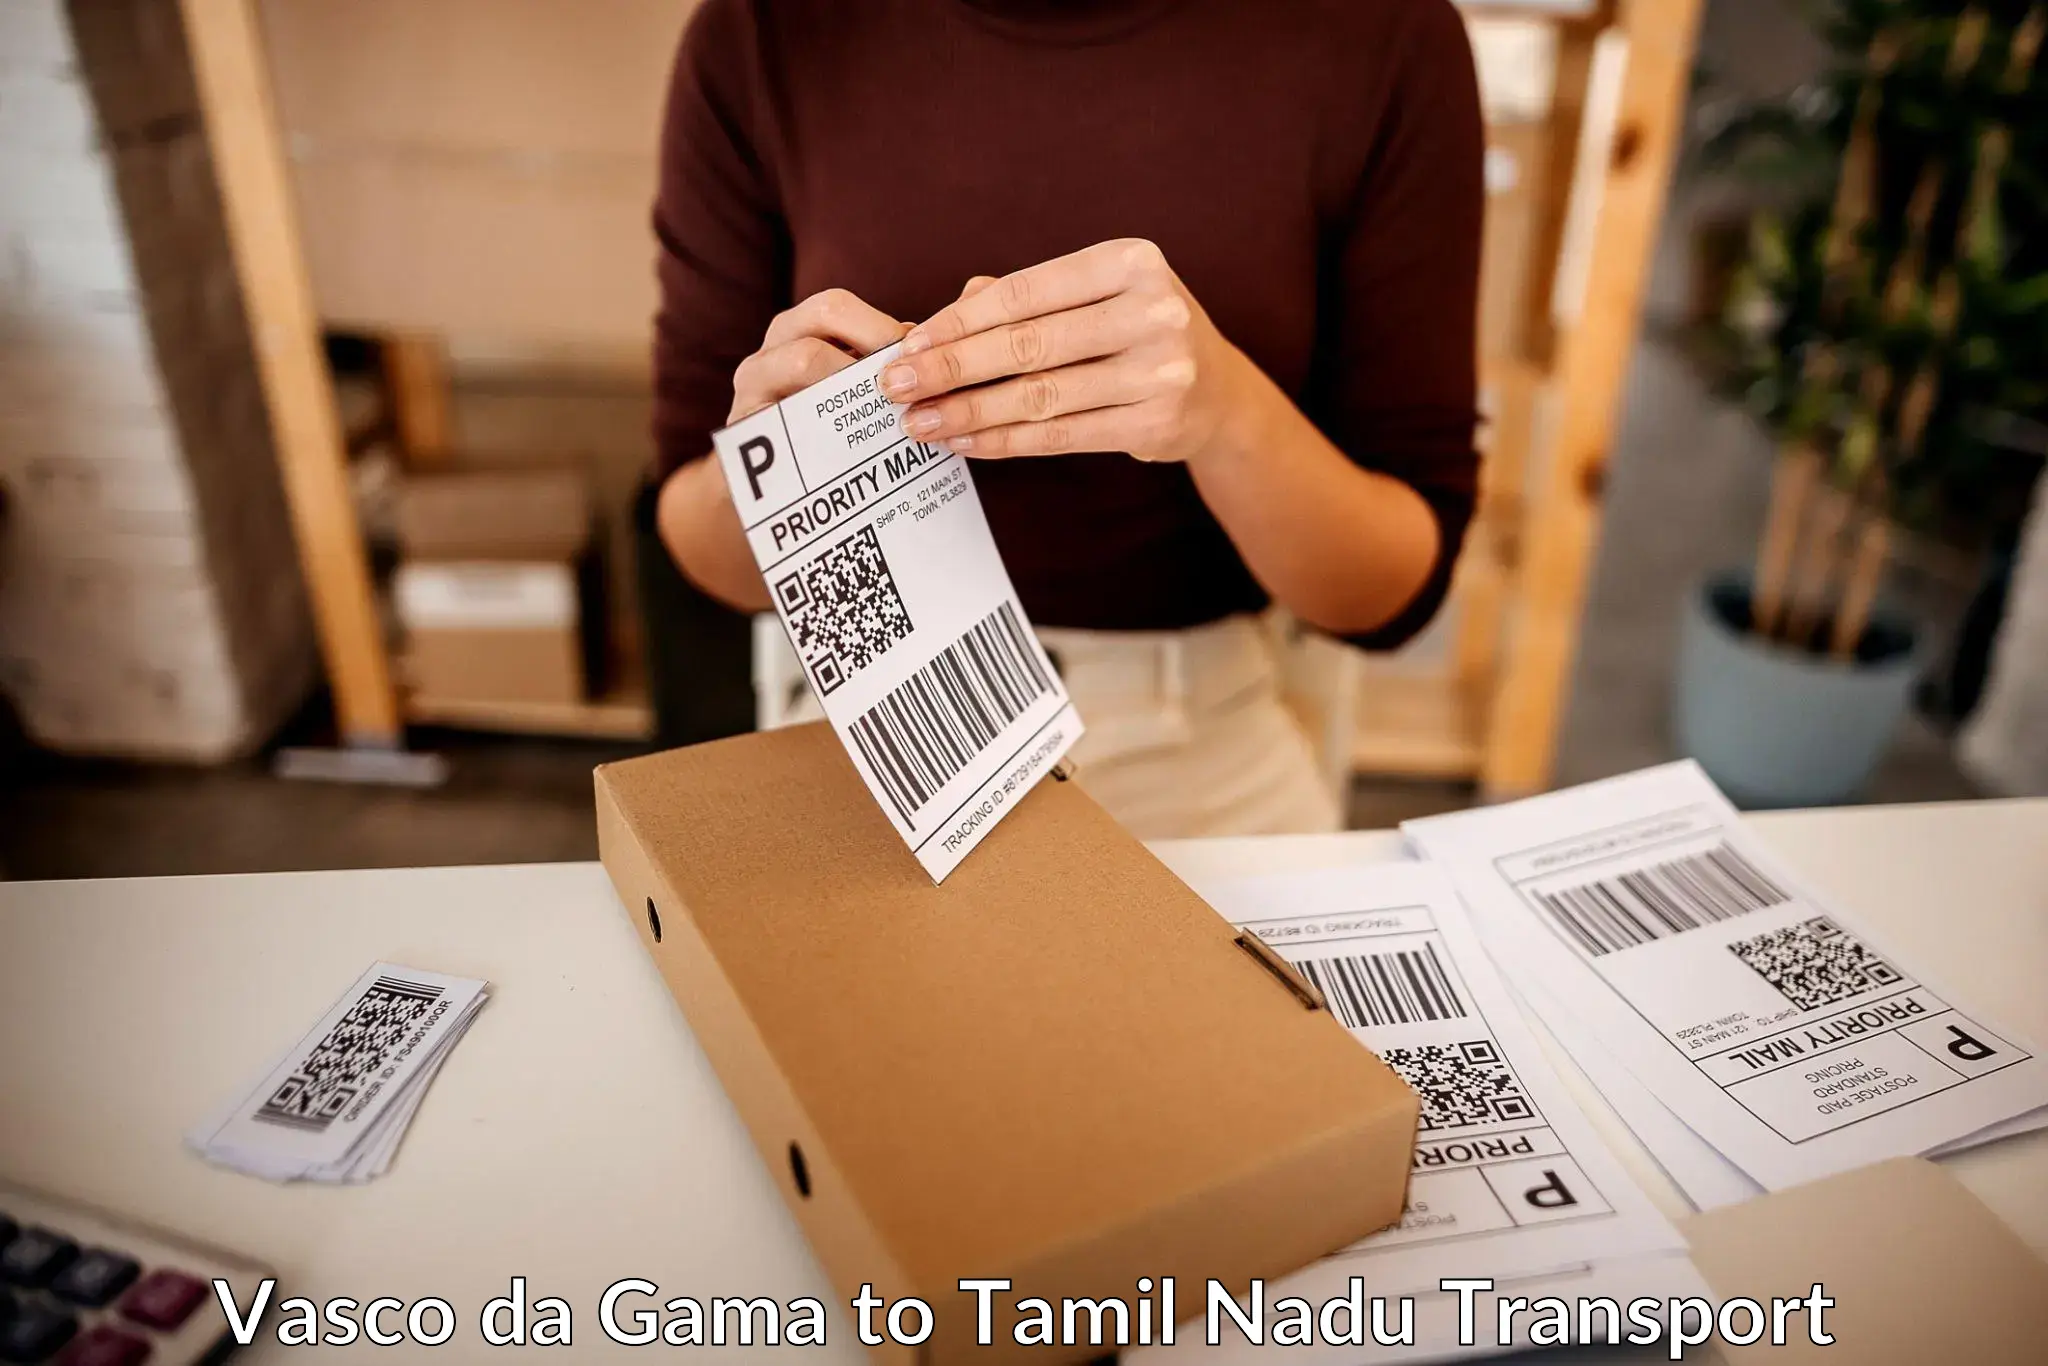 Delivery service Vasco da Gama to Tamil Nadu